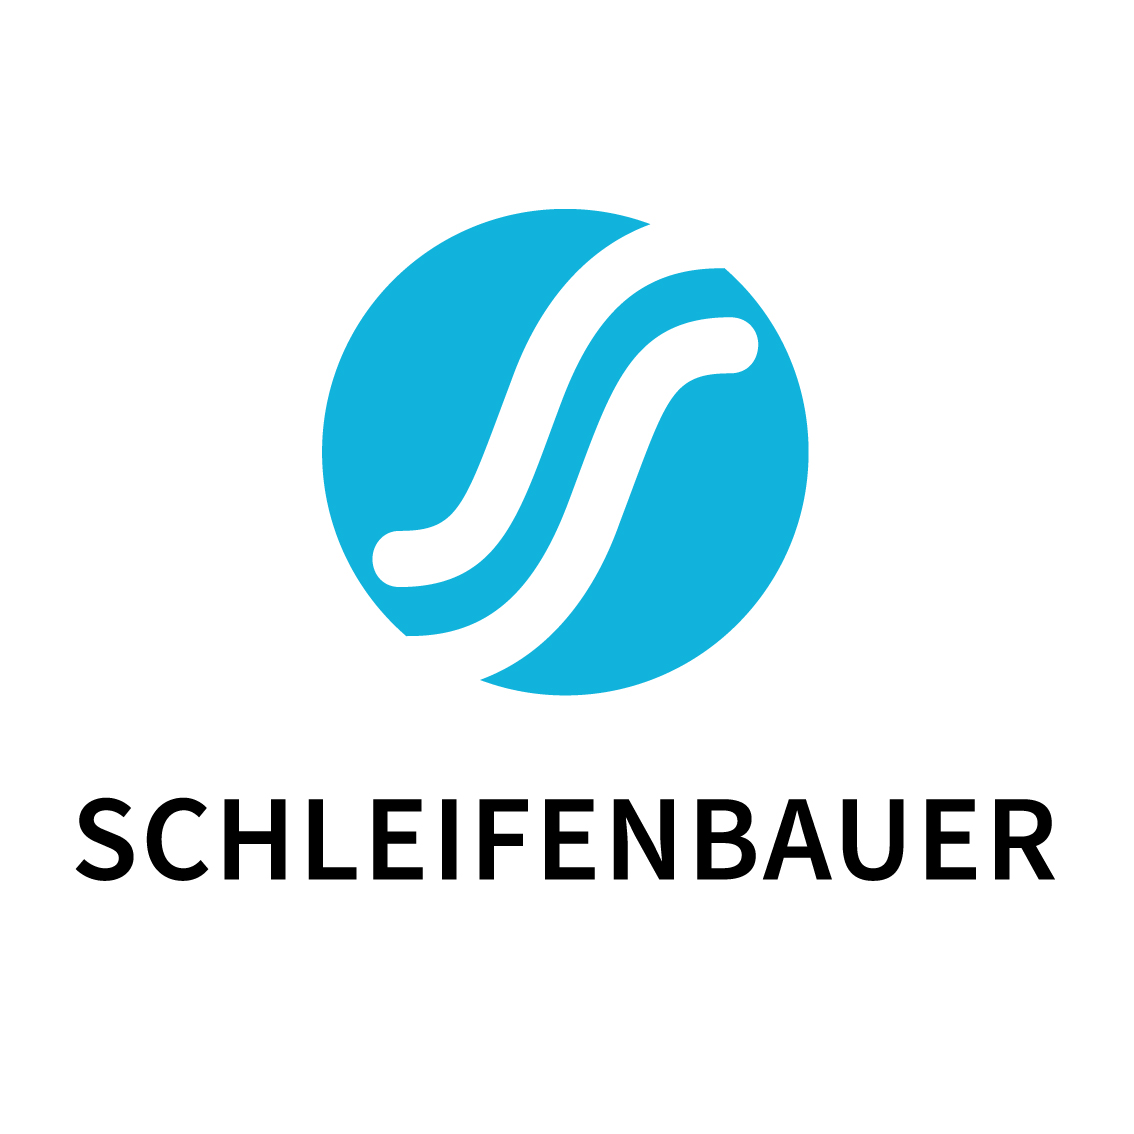 Schleifenbauer Products BV